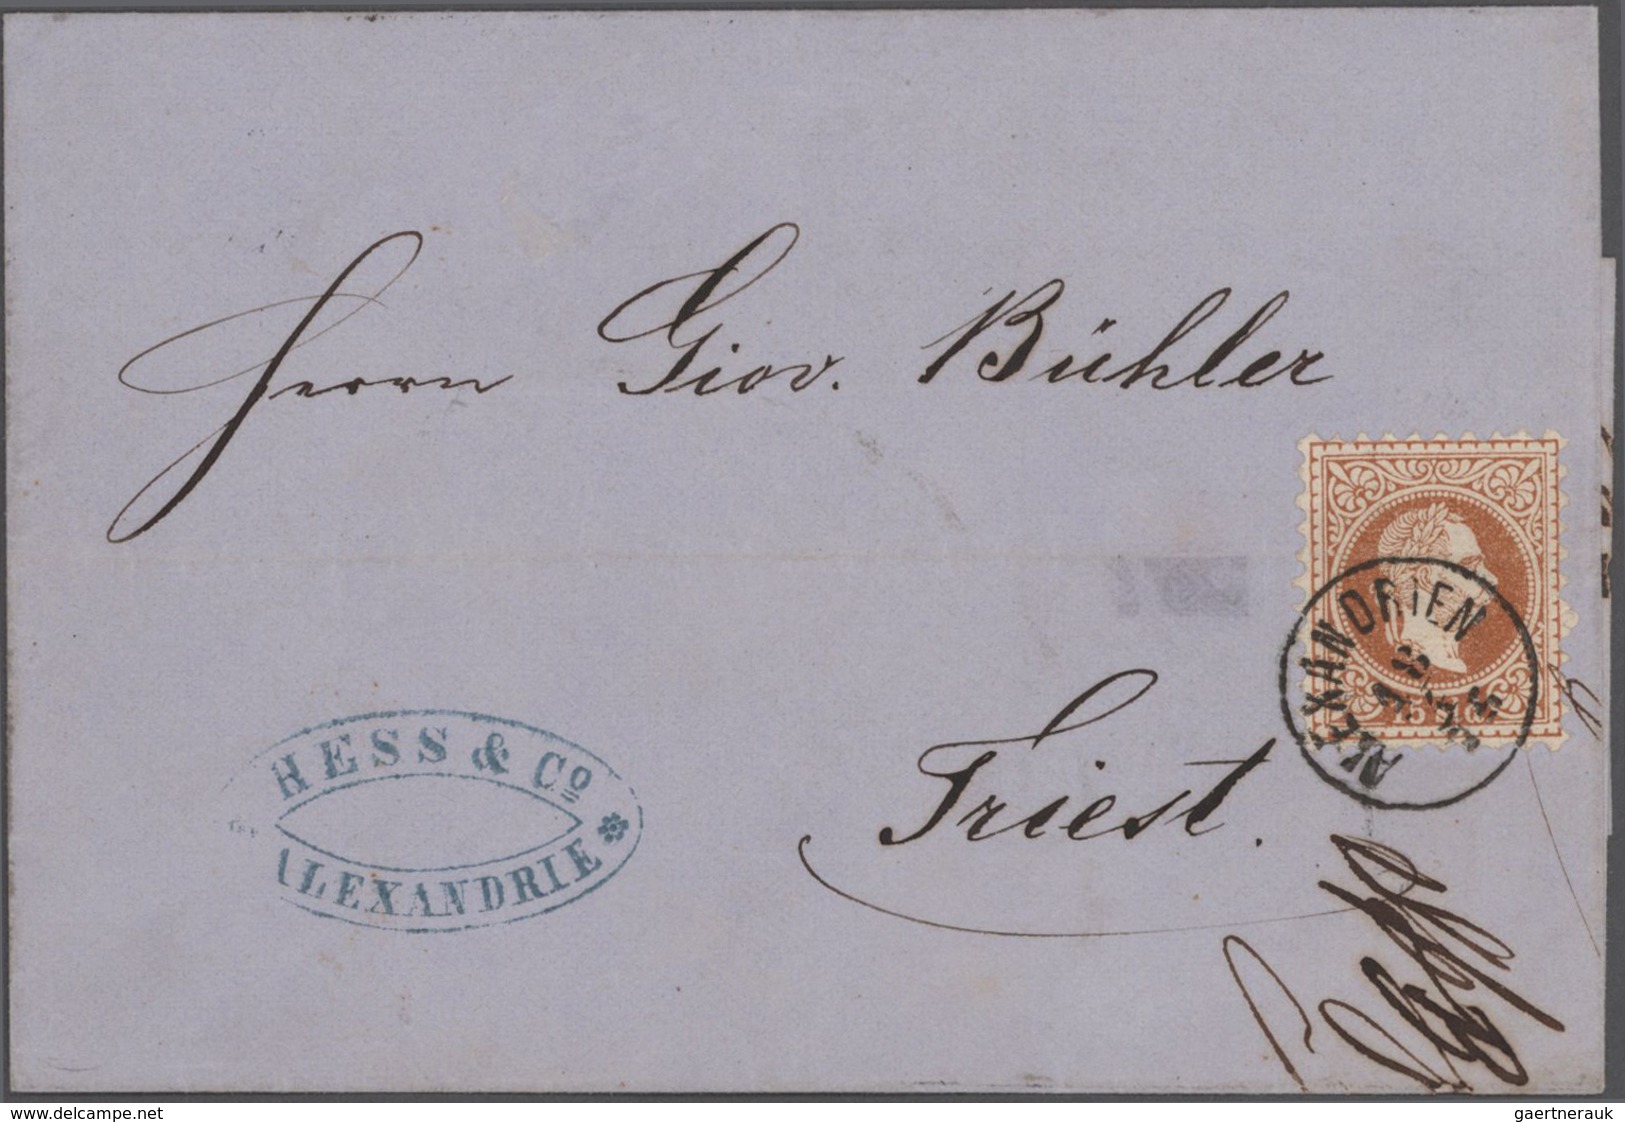 Österreichische Post in der Levante: 1838/1912 ca., gehaltvoller Sammlungsbestand mit ca. 40 Belegen